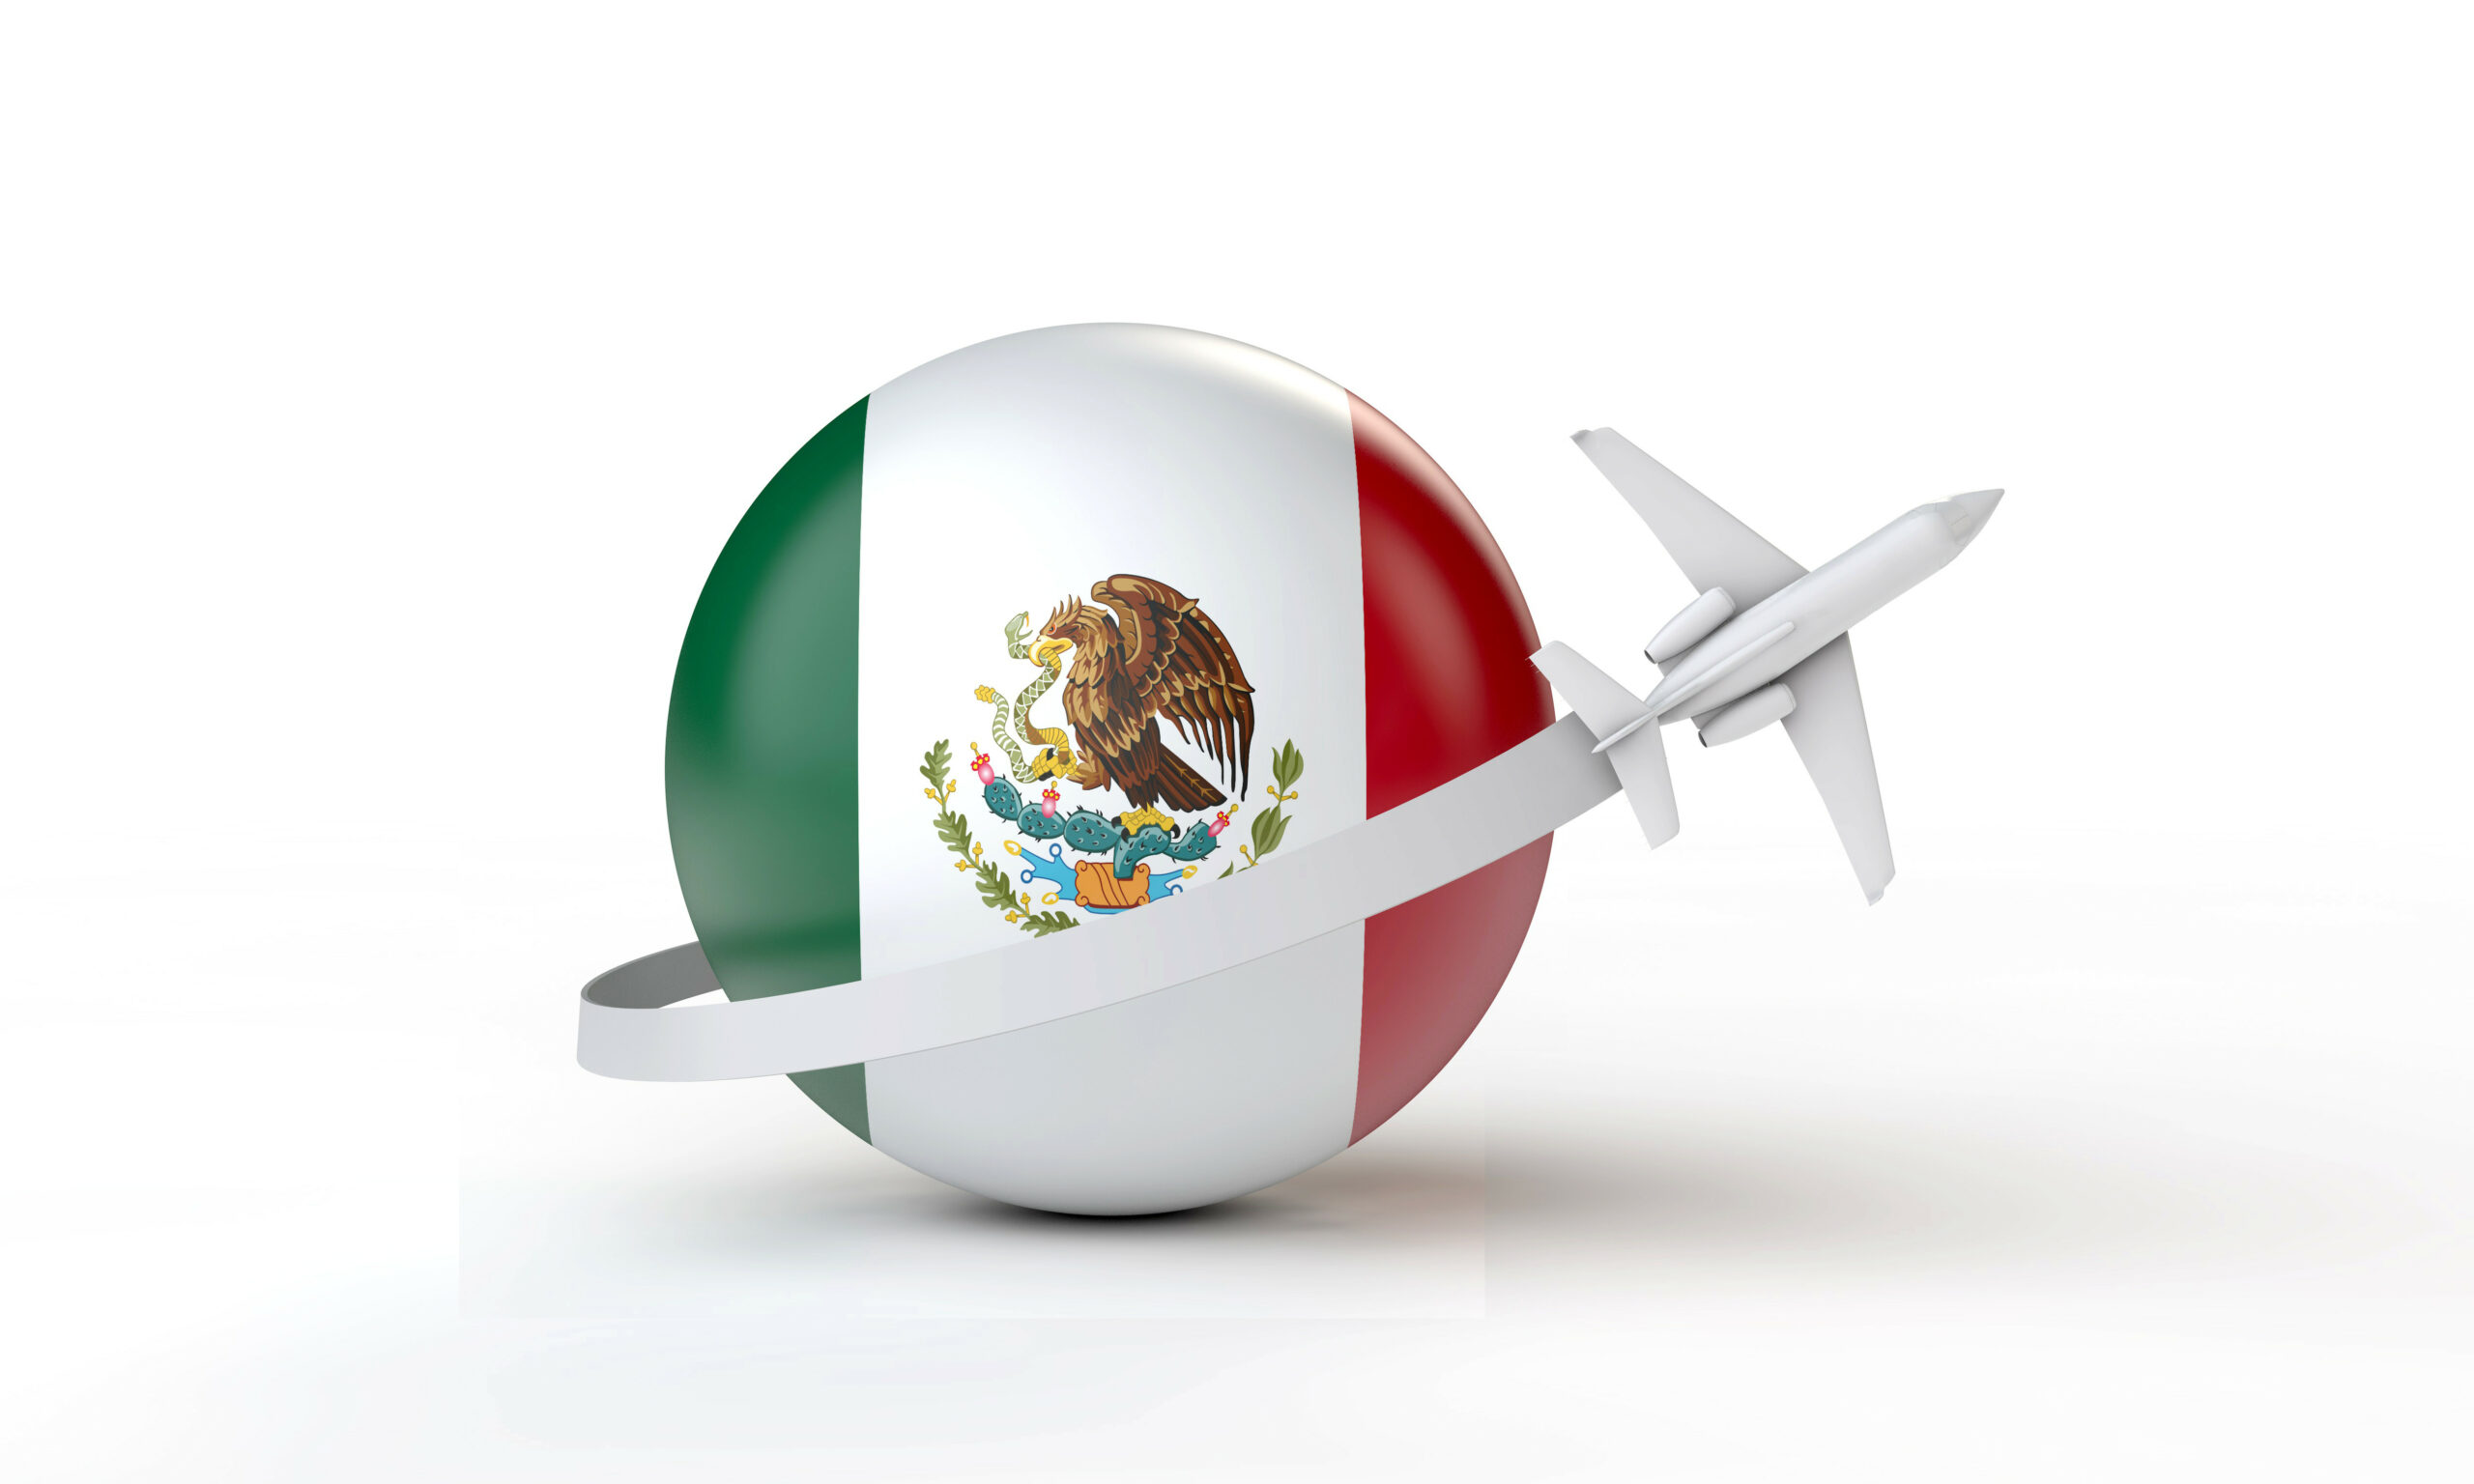 Ilustración en 3 dimensiones del escudo nacional siendo rodeado por una aeronave